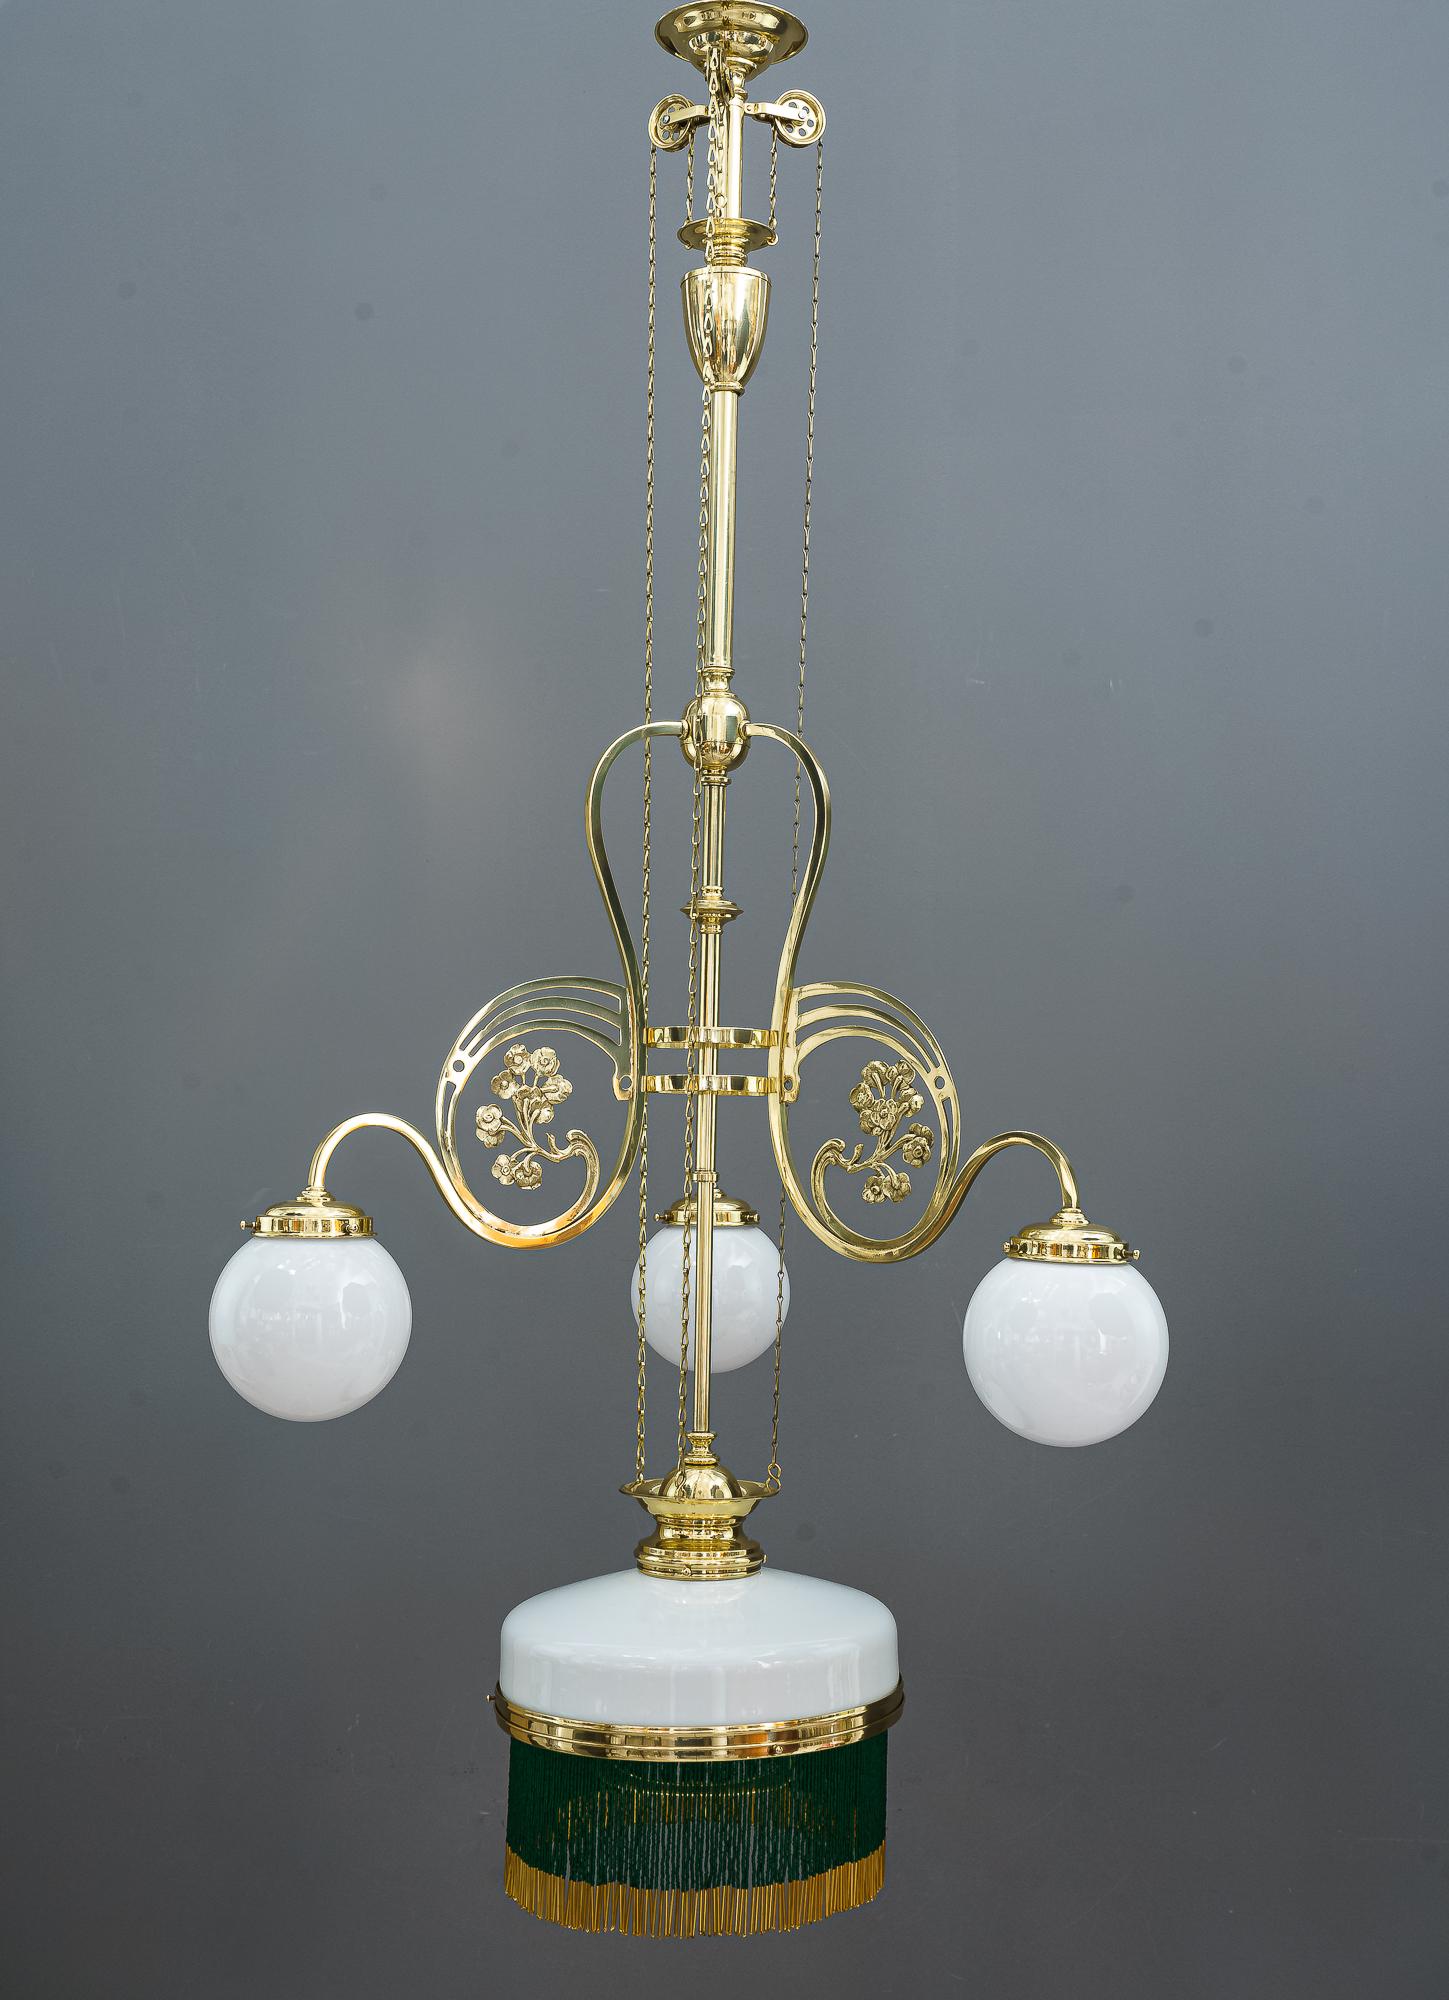 Lustre Jugendstil réglable avec verres opalins d'origine, Vienne, vers 1908
Les perles sont neuves
Polis et émaillés au four
Réglable de 122 cm à 141 cm.